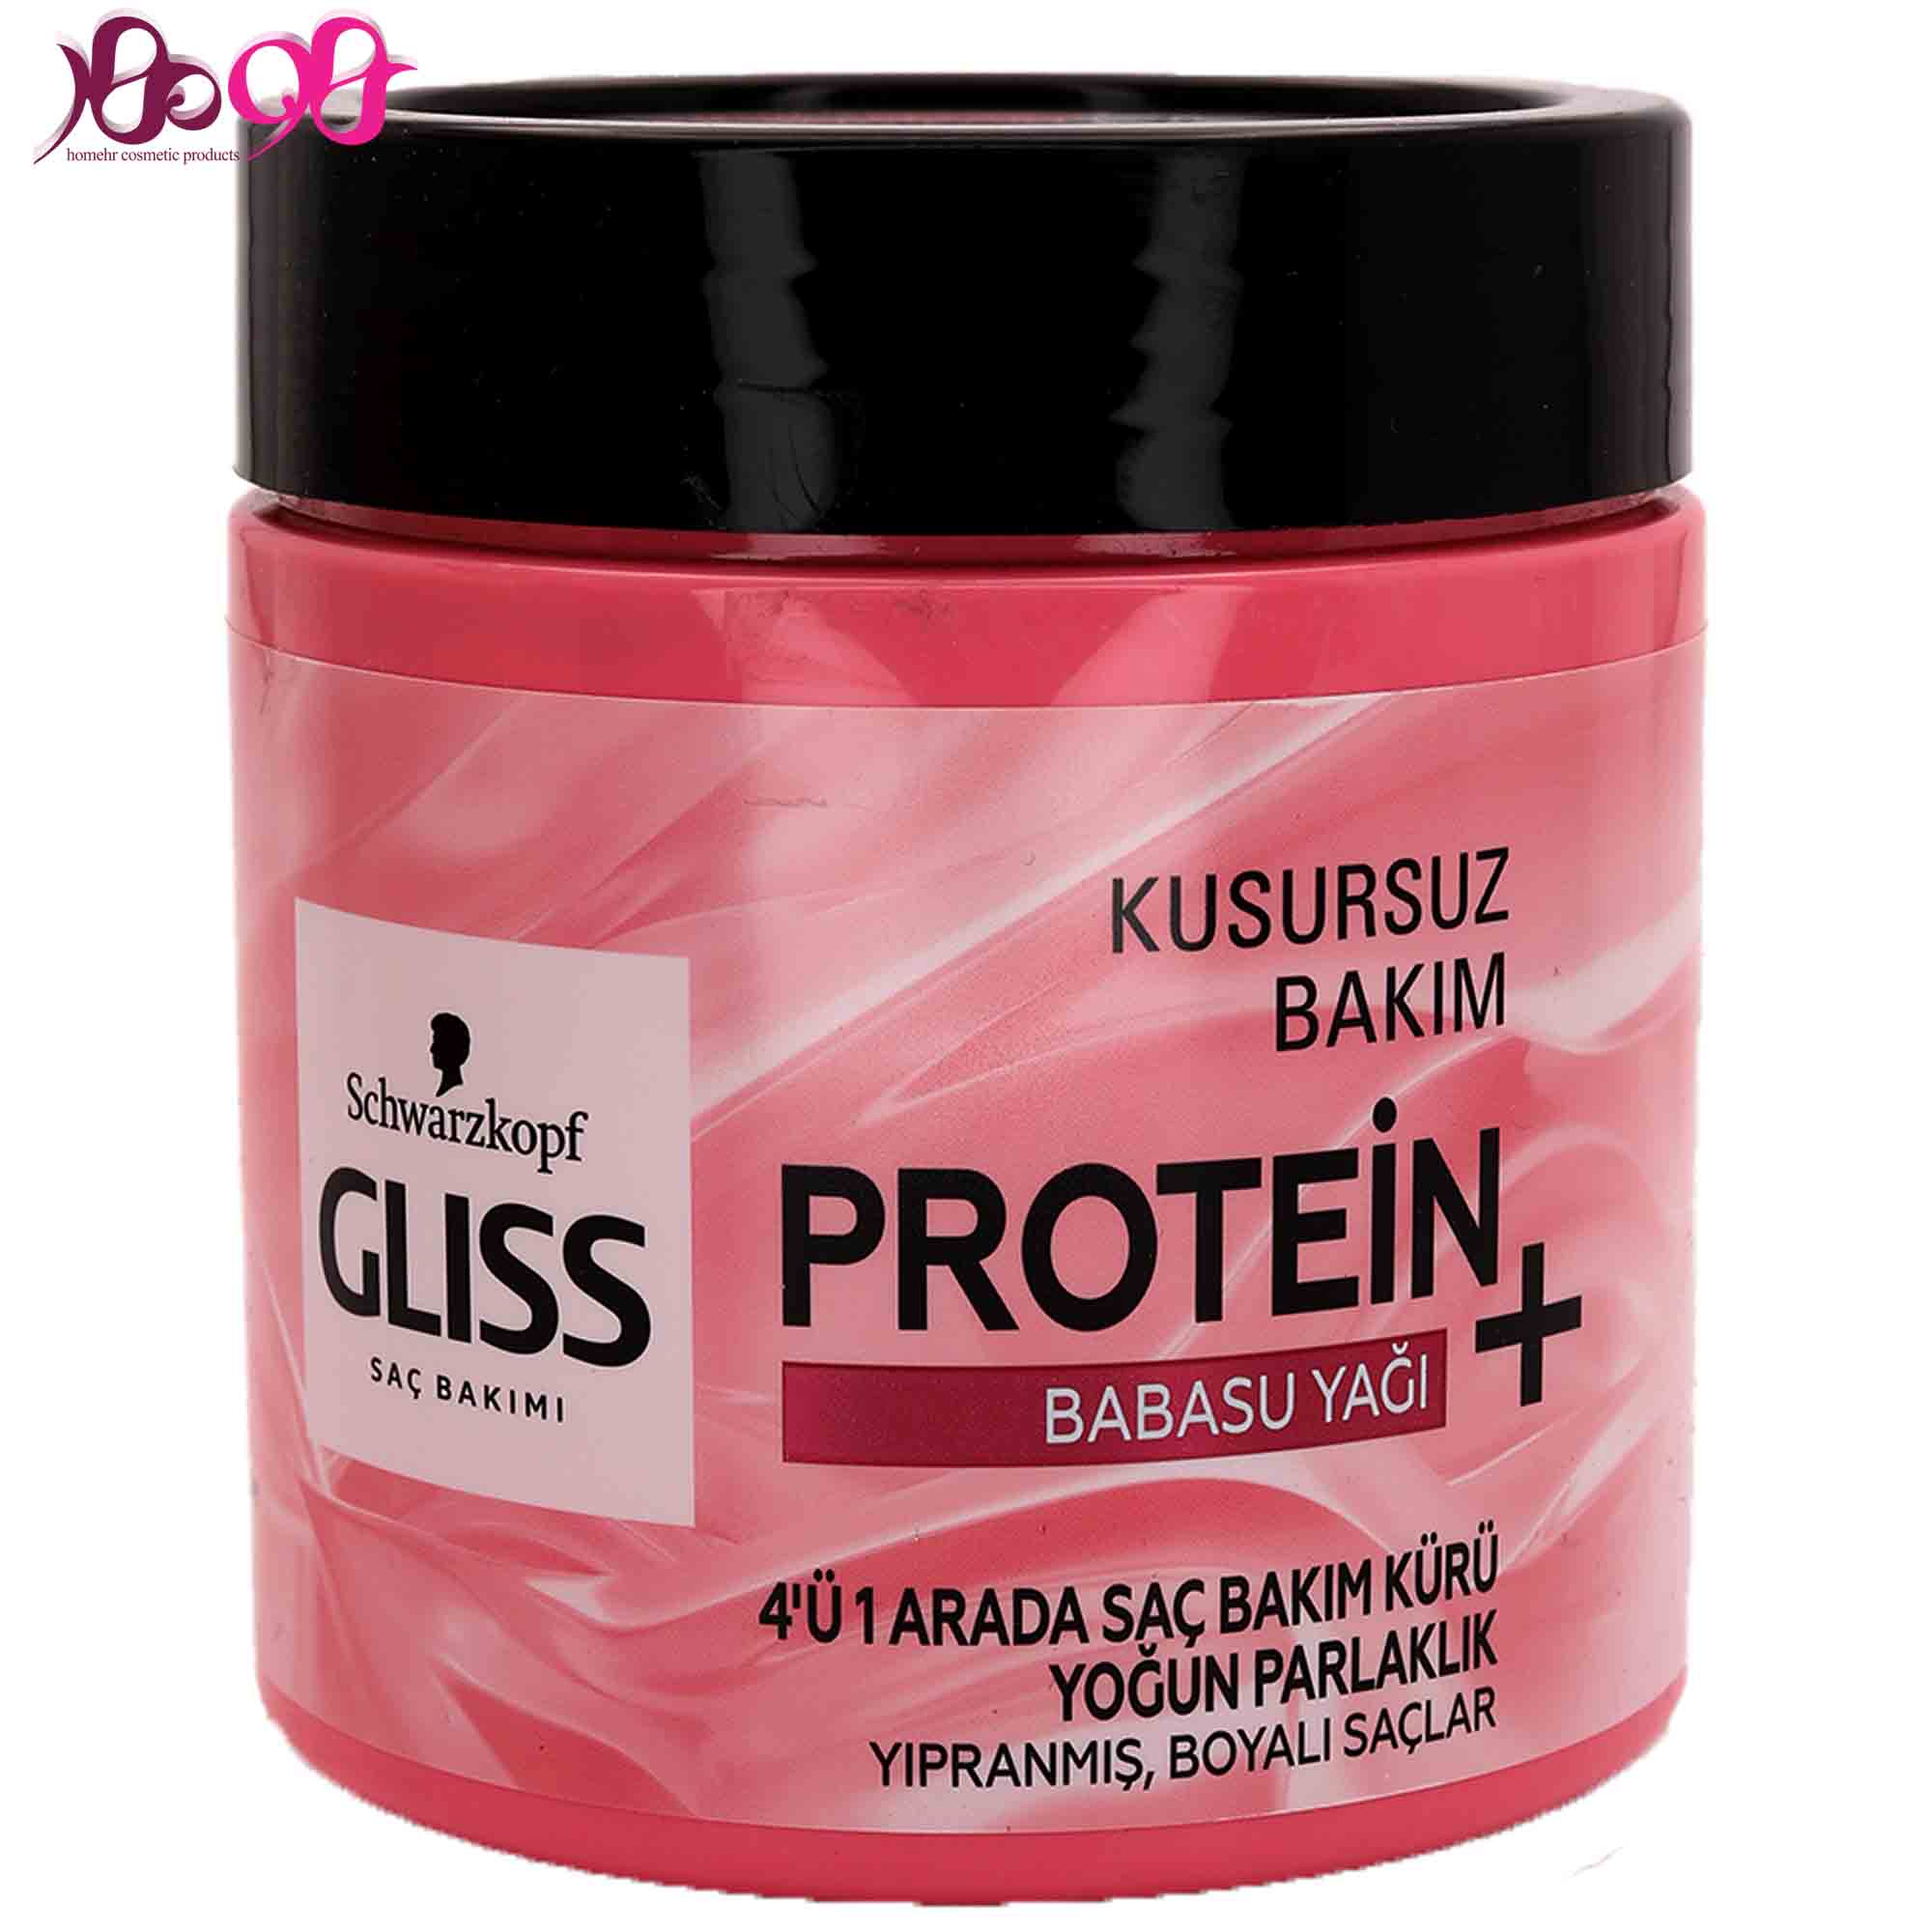 ماسک-مو-پروتئینه-گلیس-صورتی-4-کاره-حاوی-روغن-باباسو-400-میل-برای-موهای-رنگ-شده-GLISS